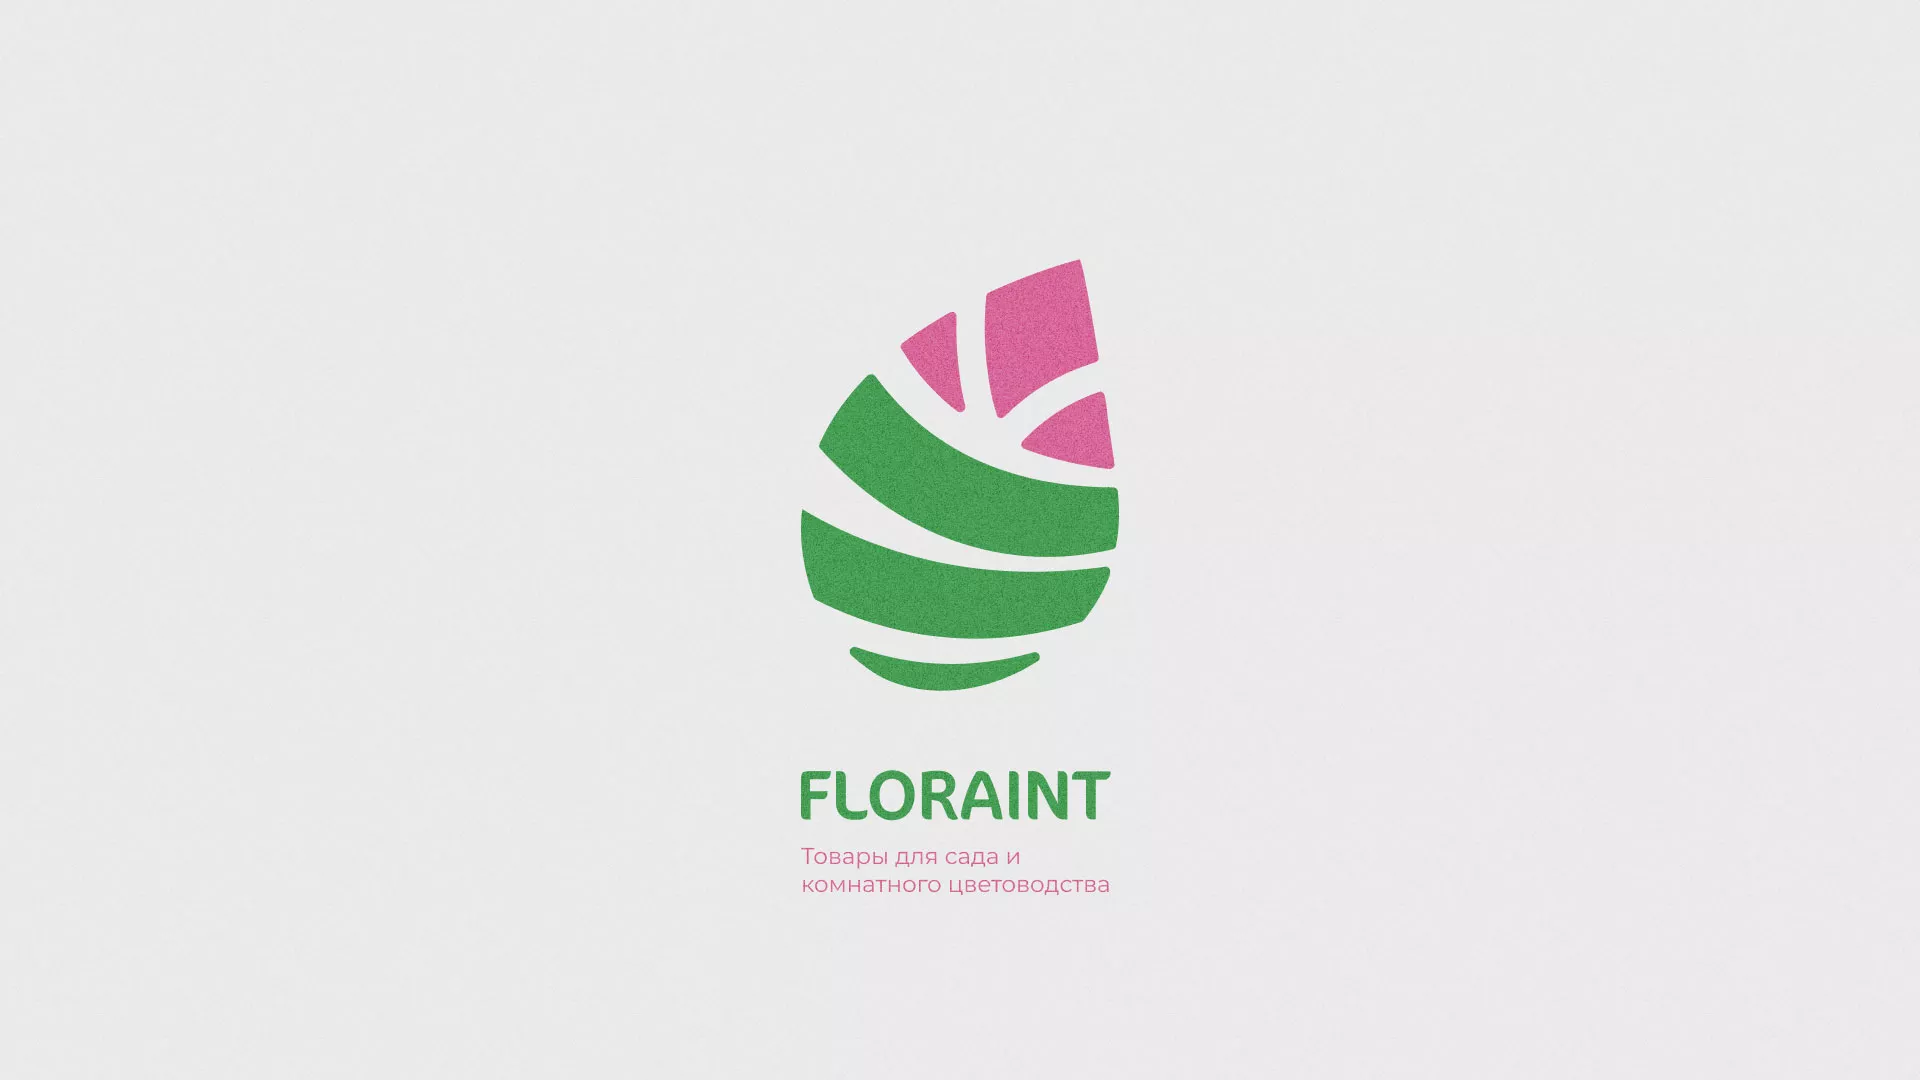 Разработка оформления профиля Instagram для магазина «Floraint» в Любиме